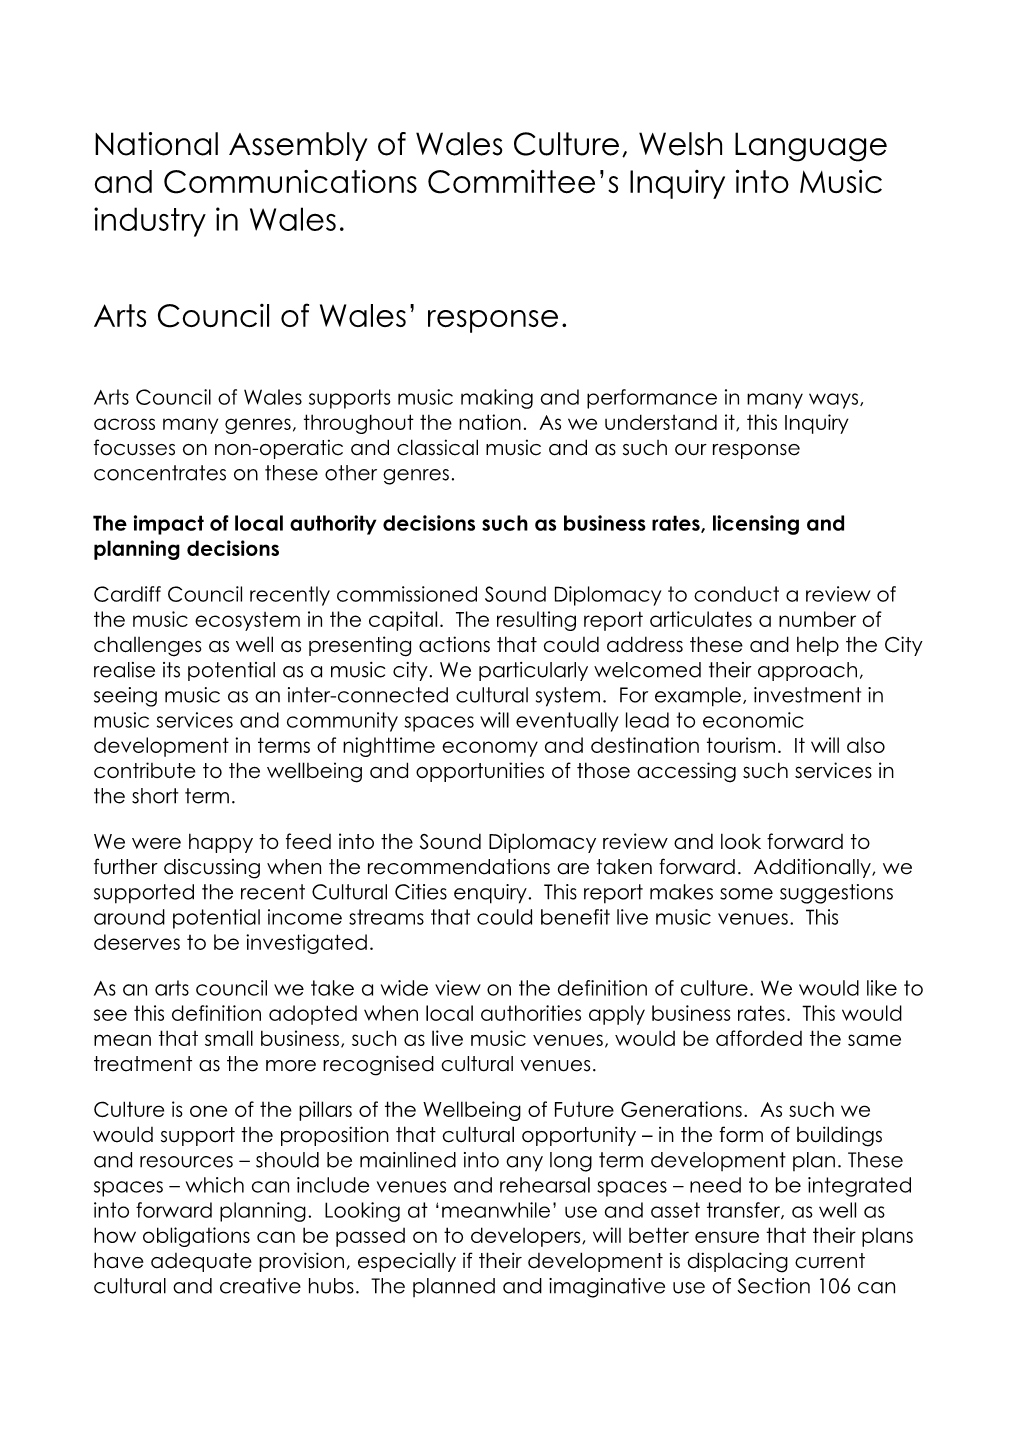 Arts Council of Wales , Item 2. PDF 92 KB